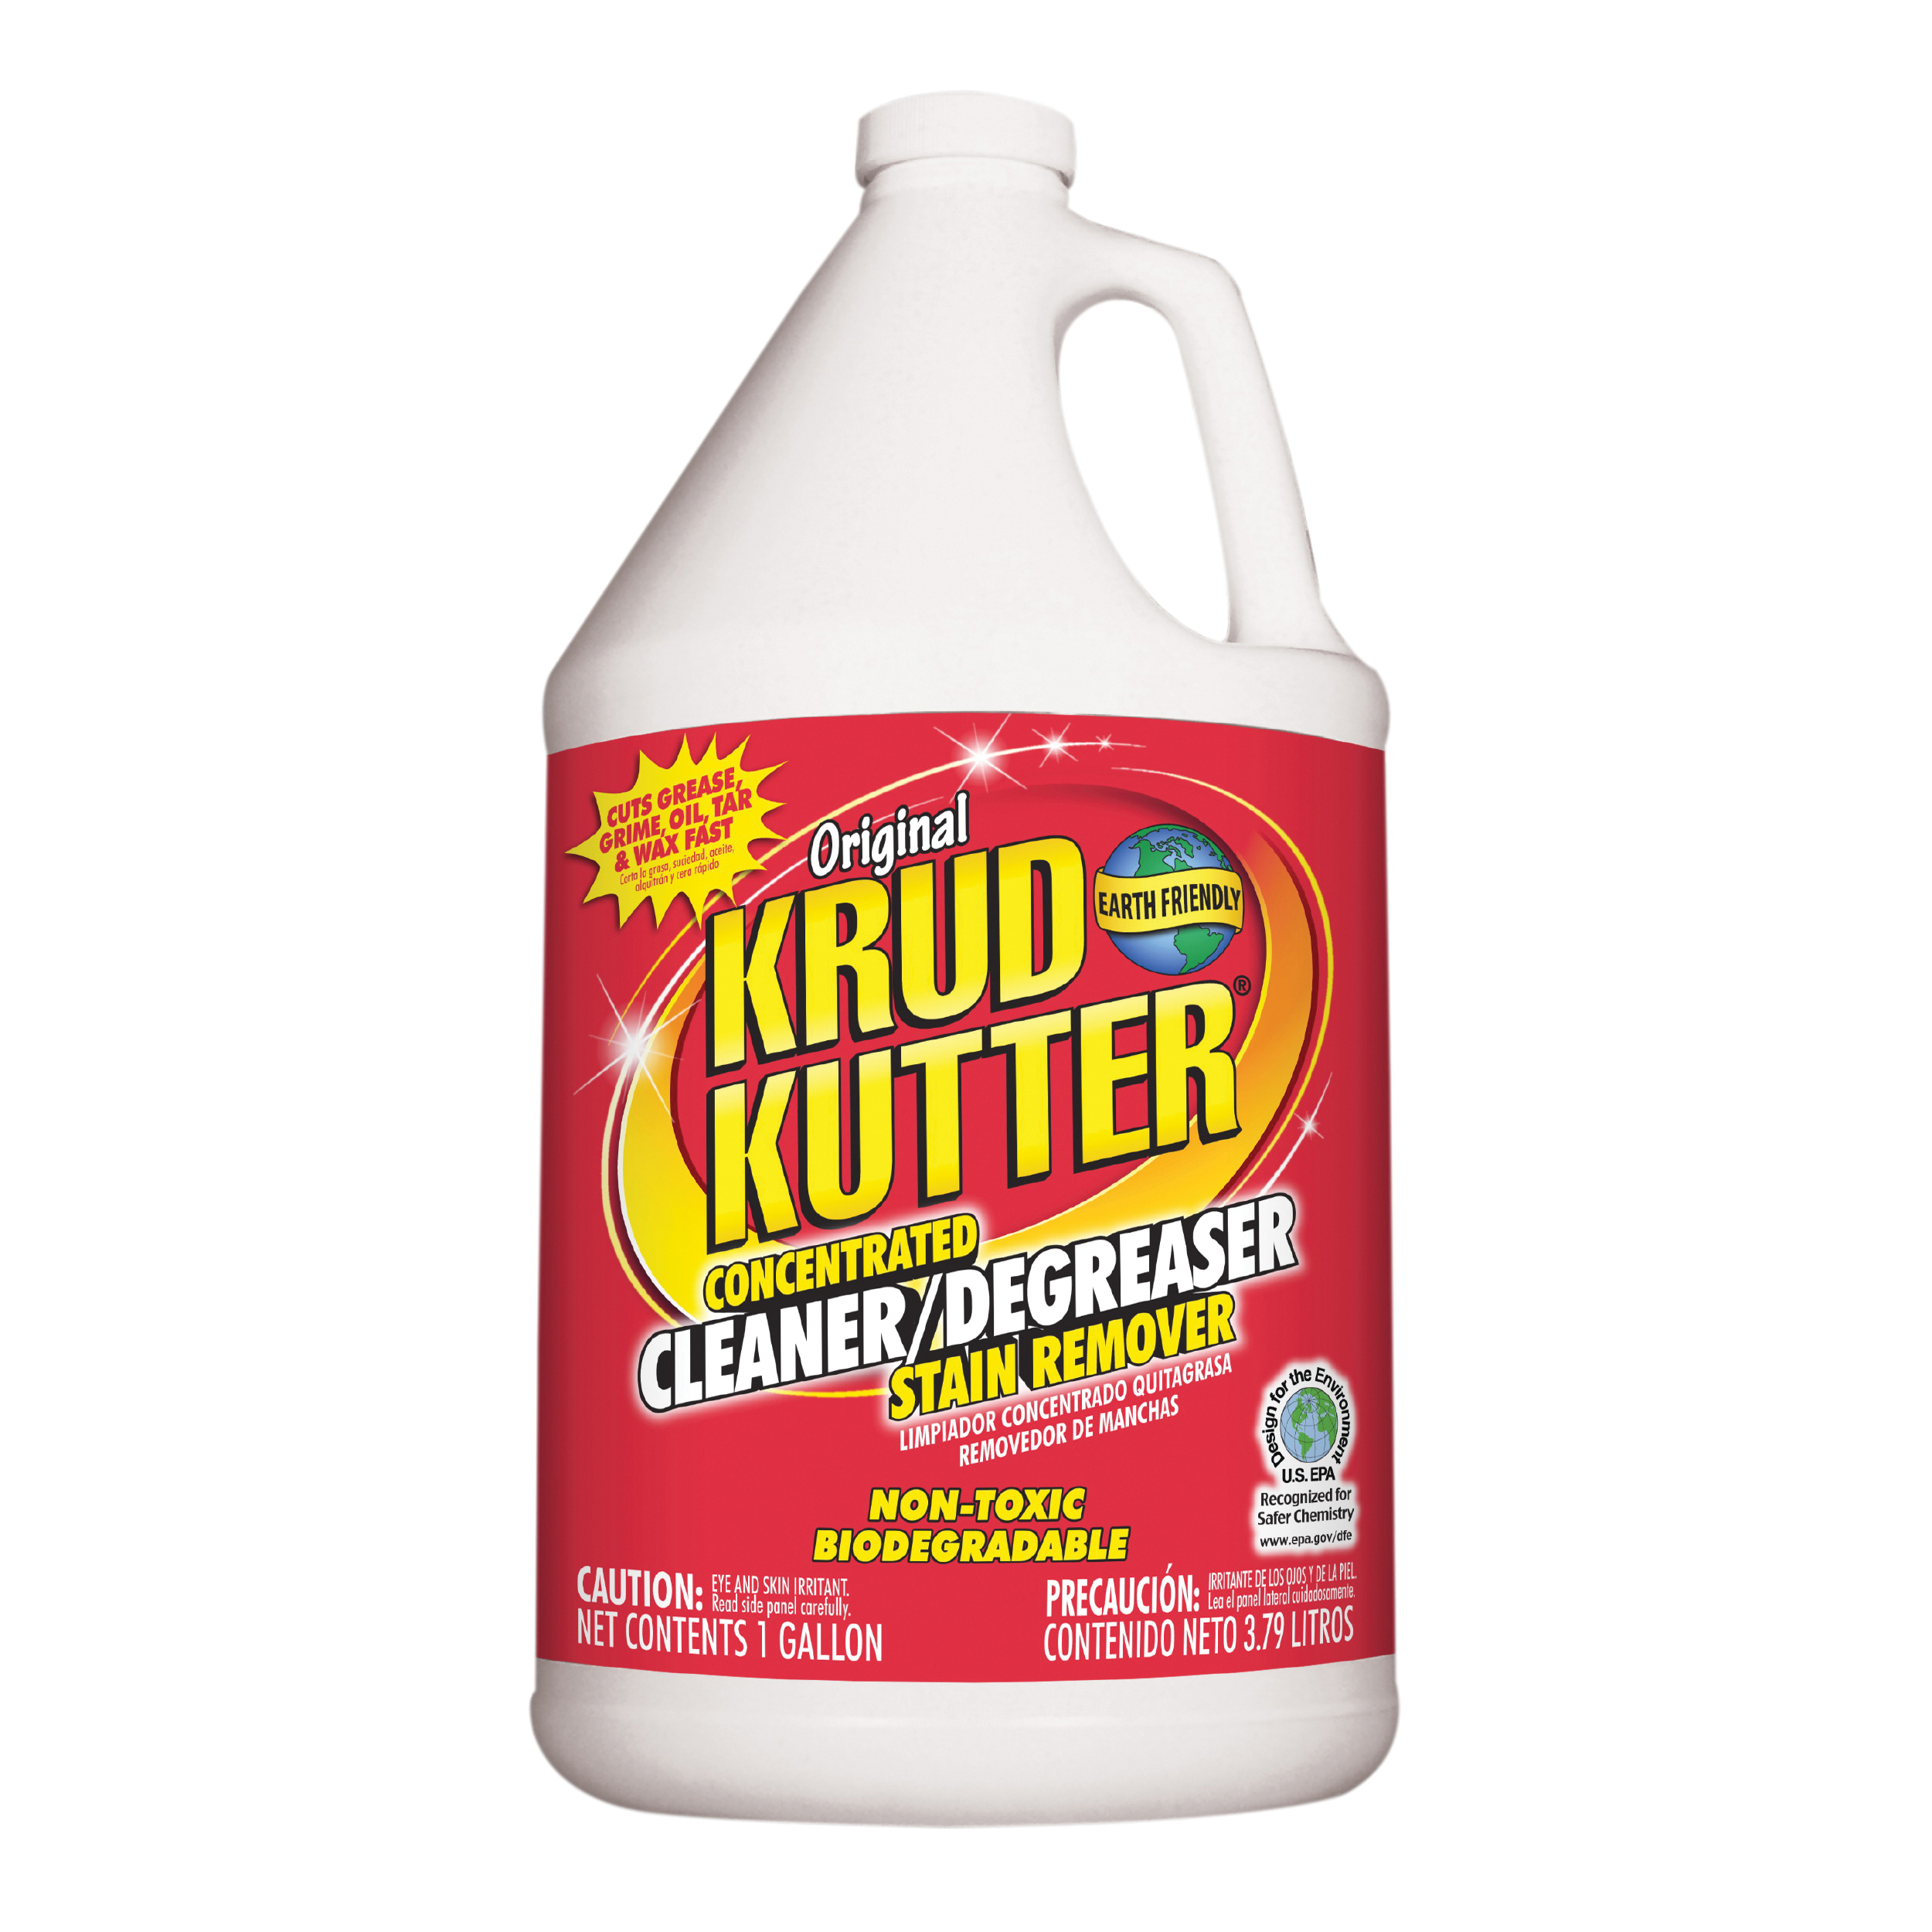 Krud Kutter KK012 Cleaner and Degreaser, 1 gal, Bottle, Liquid, Mild